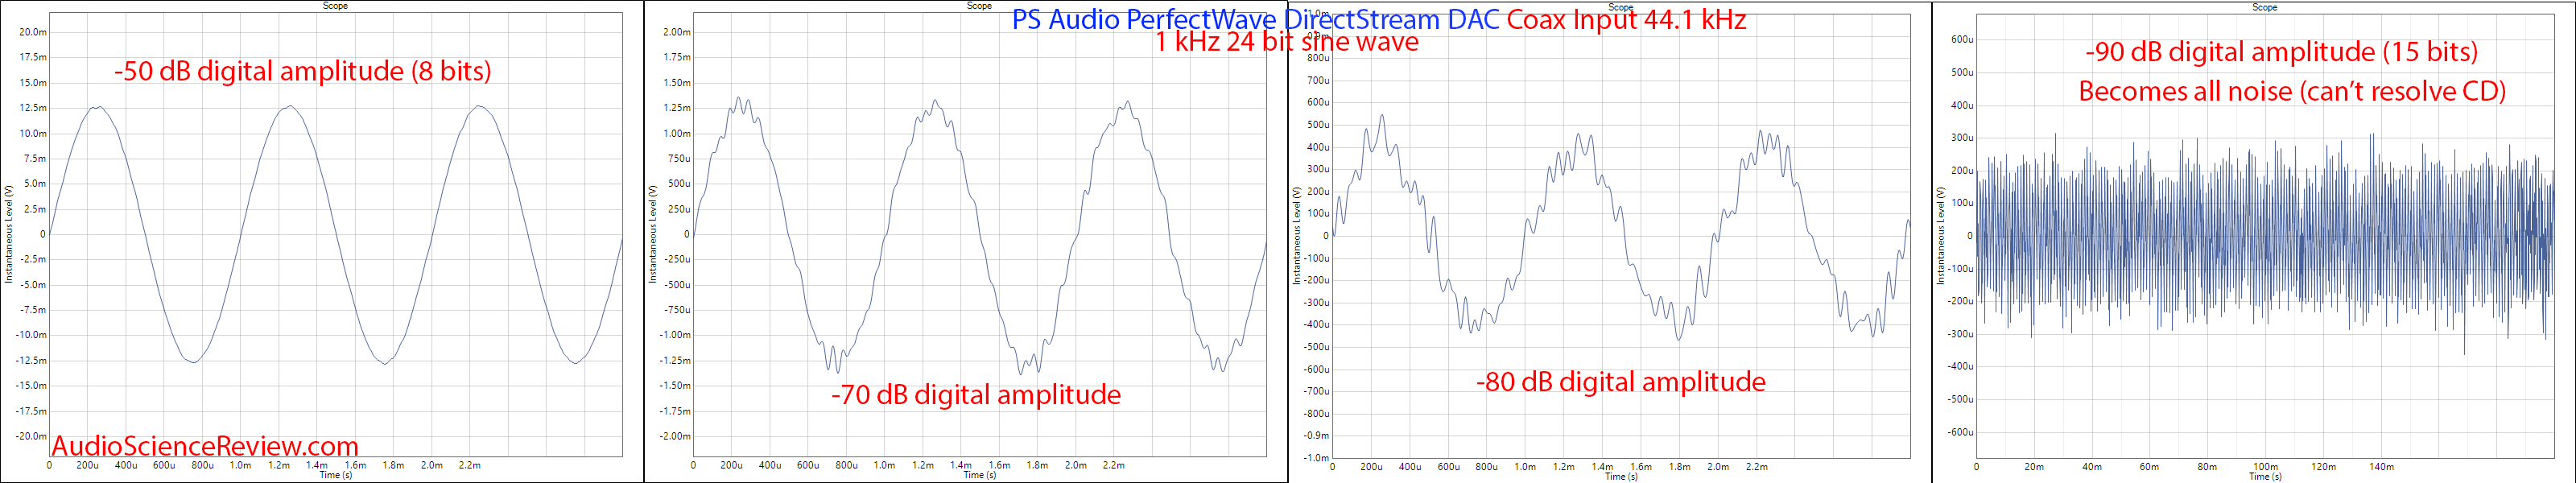 PS Audio PerfectWave DS DAC Sine Wave Audio Measurements large.png